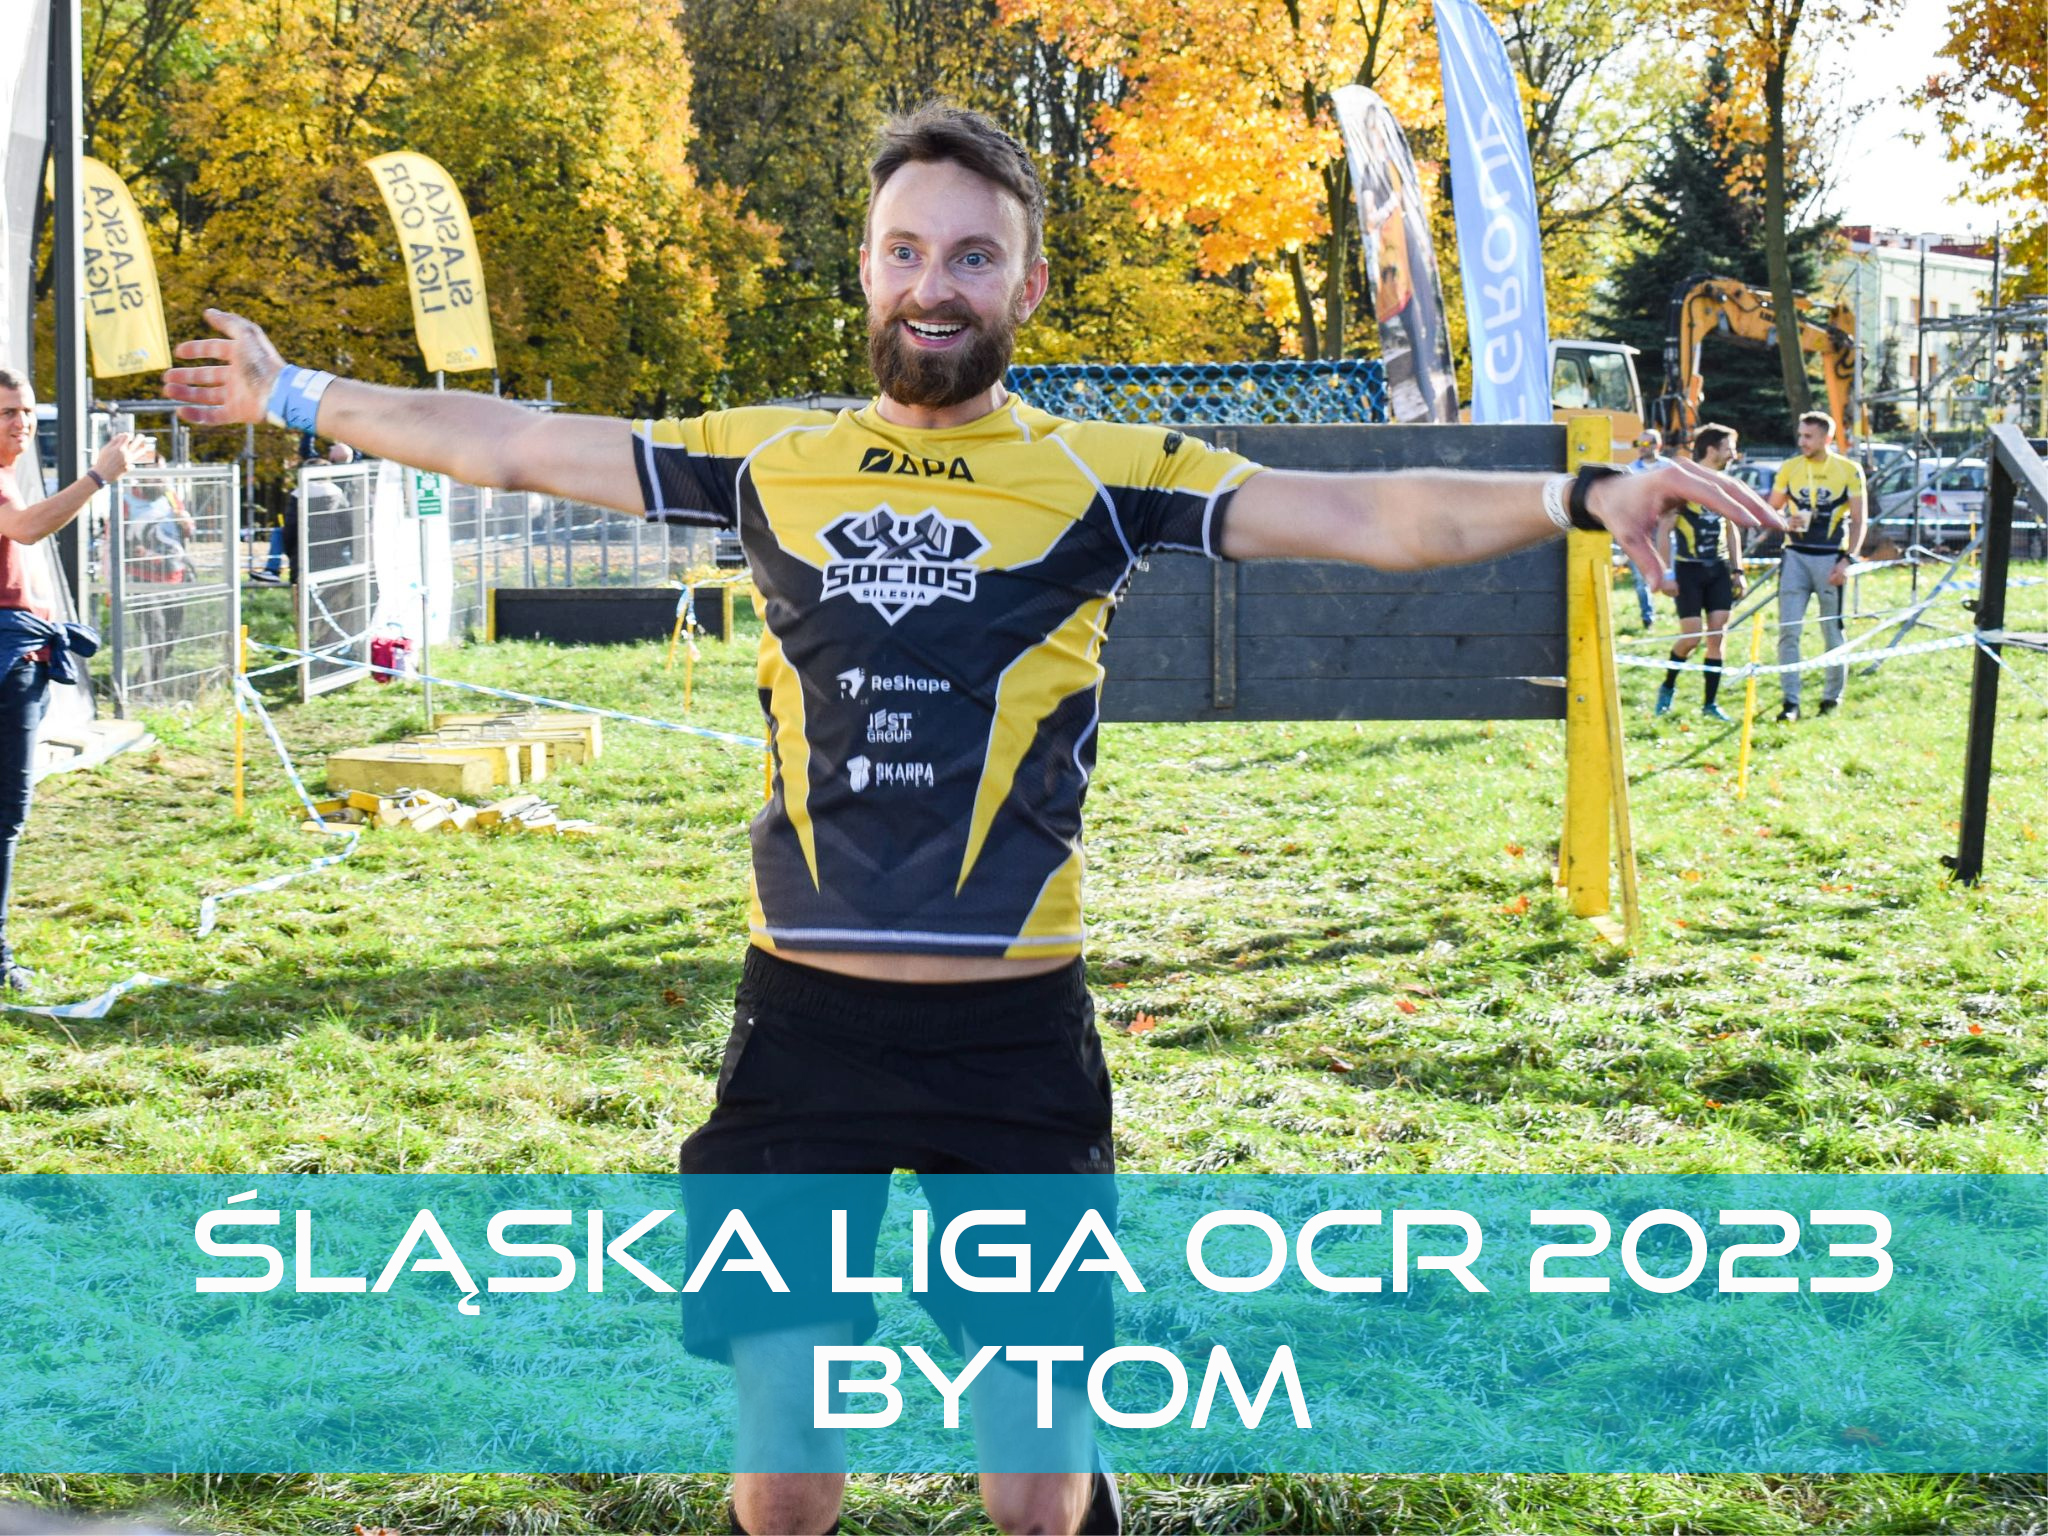 Śląska Liga OCR 2023 Bytom